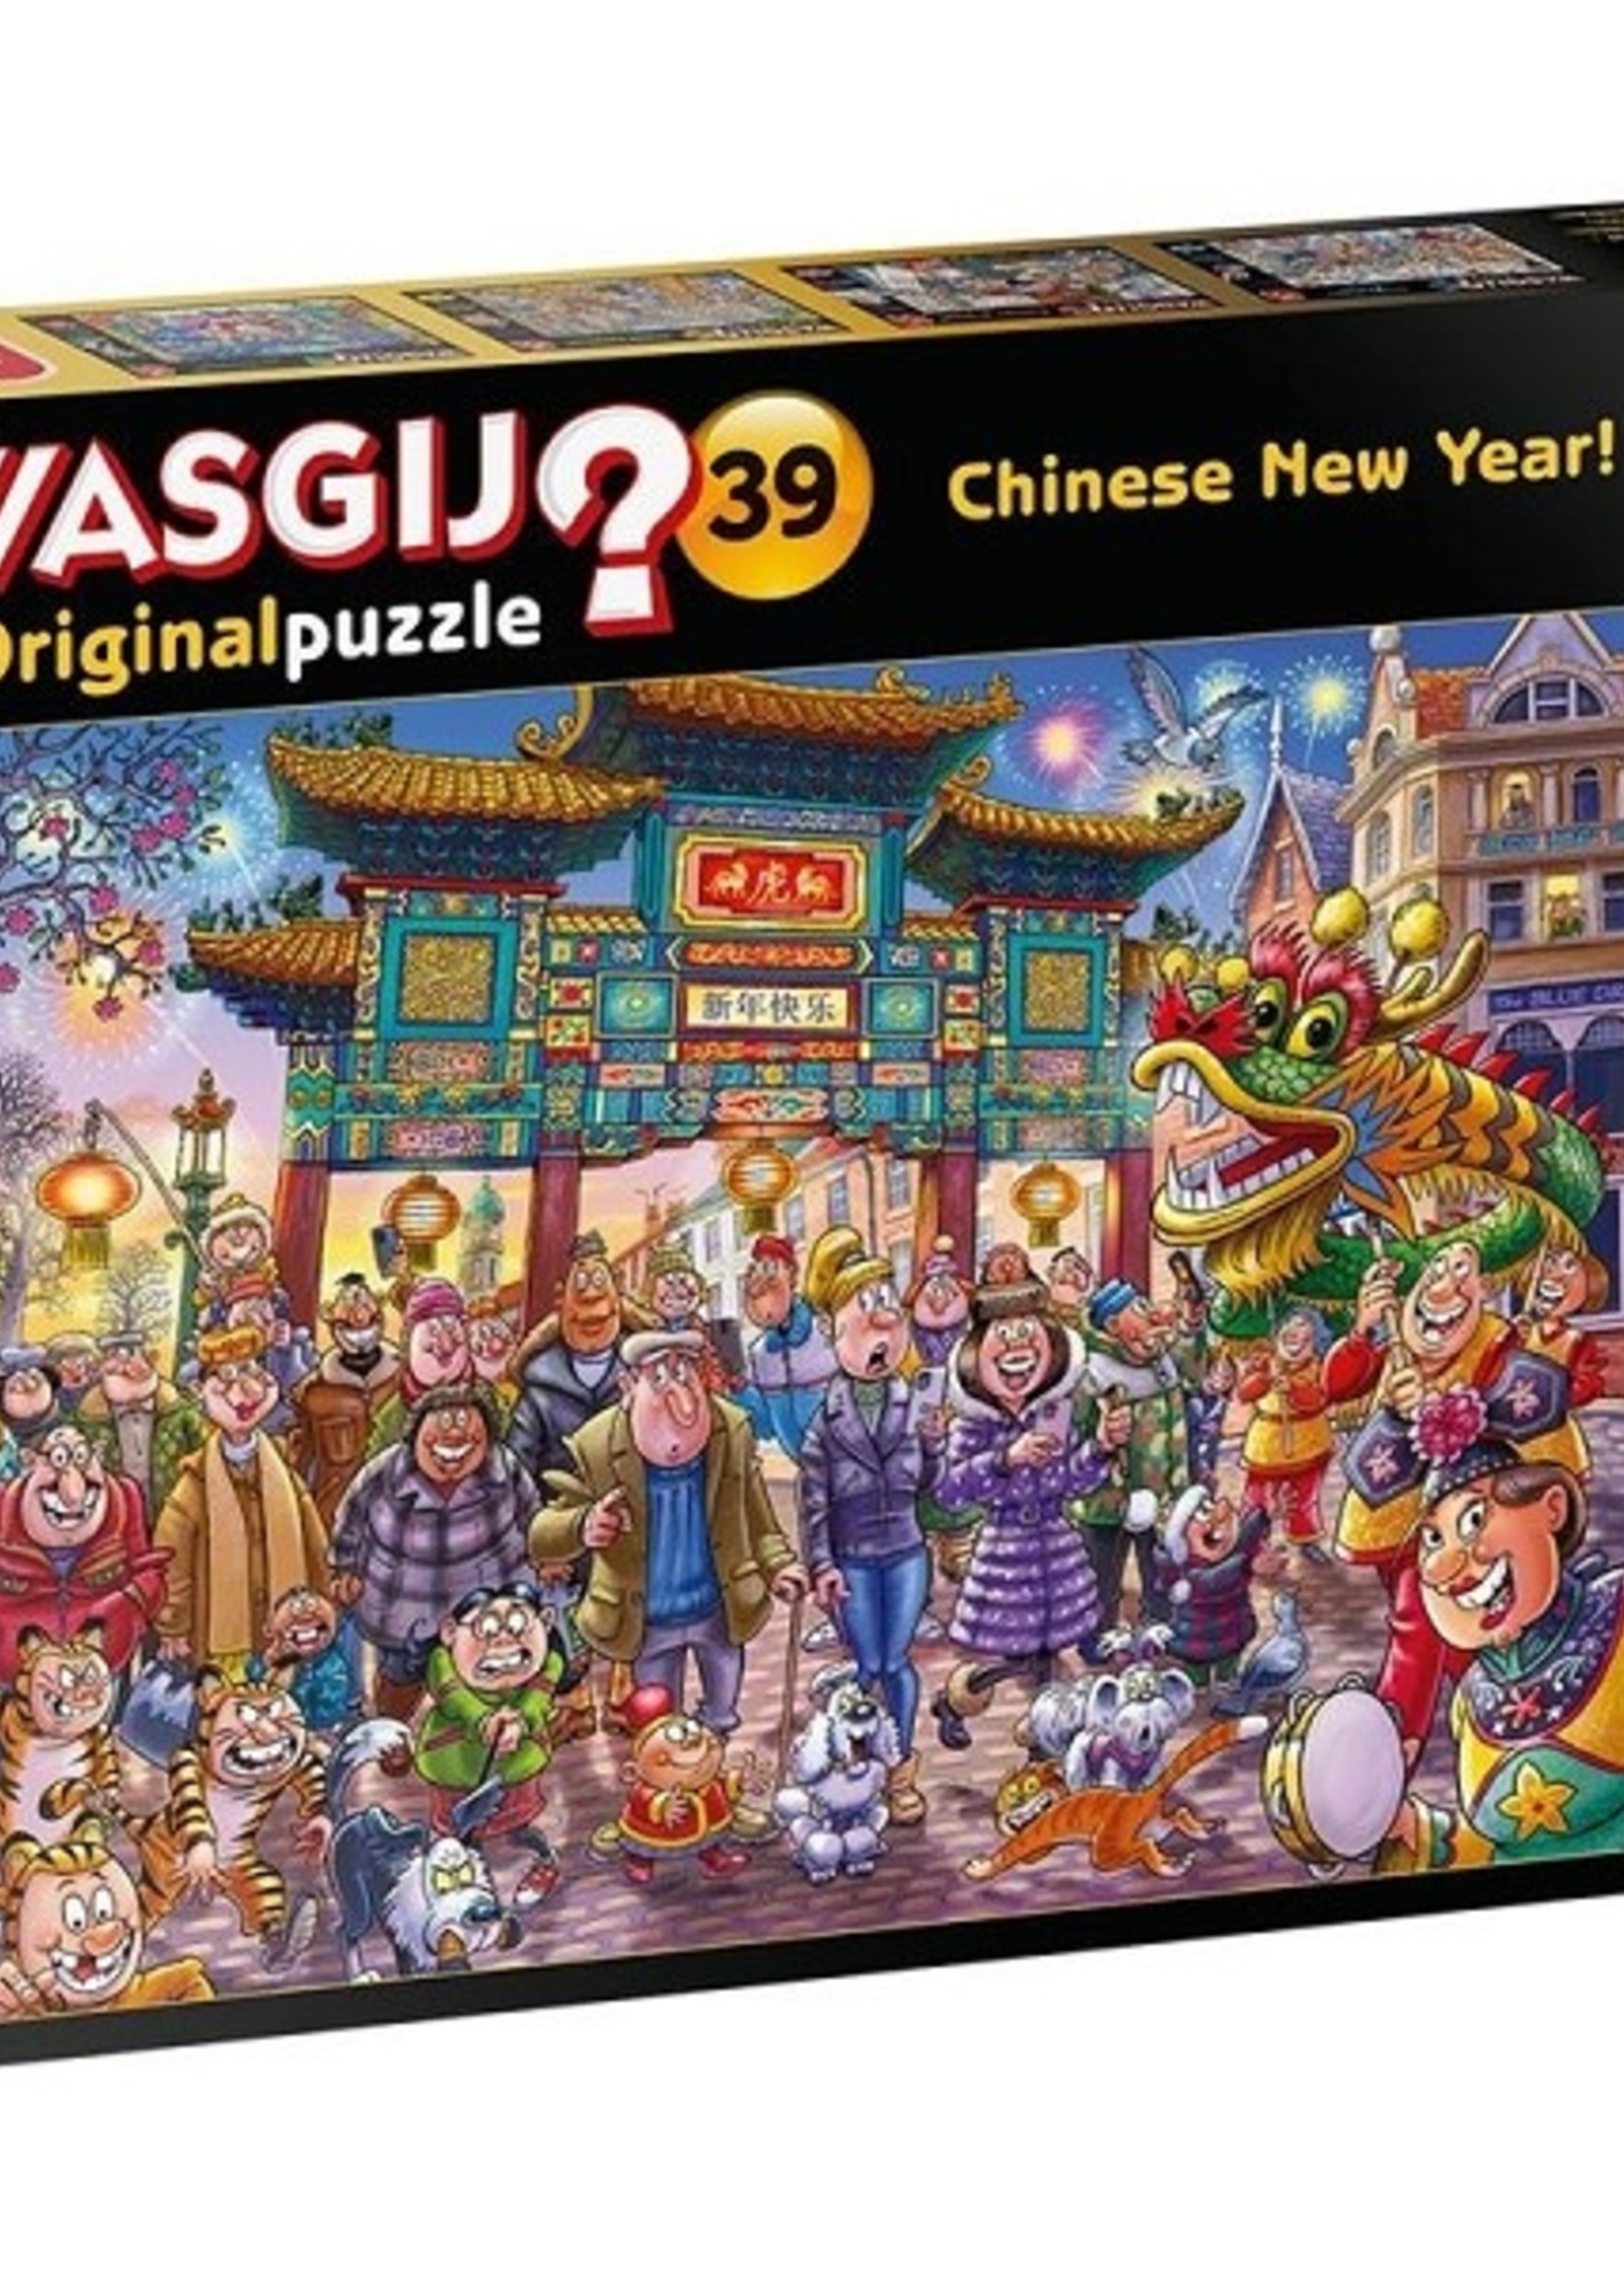 Jumbo Wasgij Original 39 puzzel 1000 stukjes Chinees Nieuwjaar!